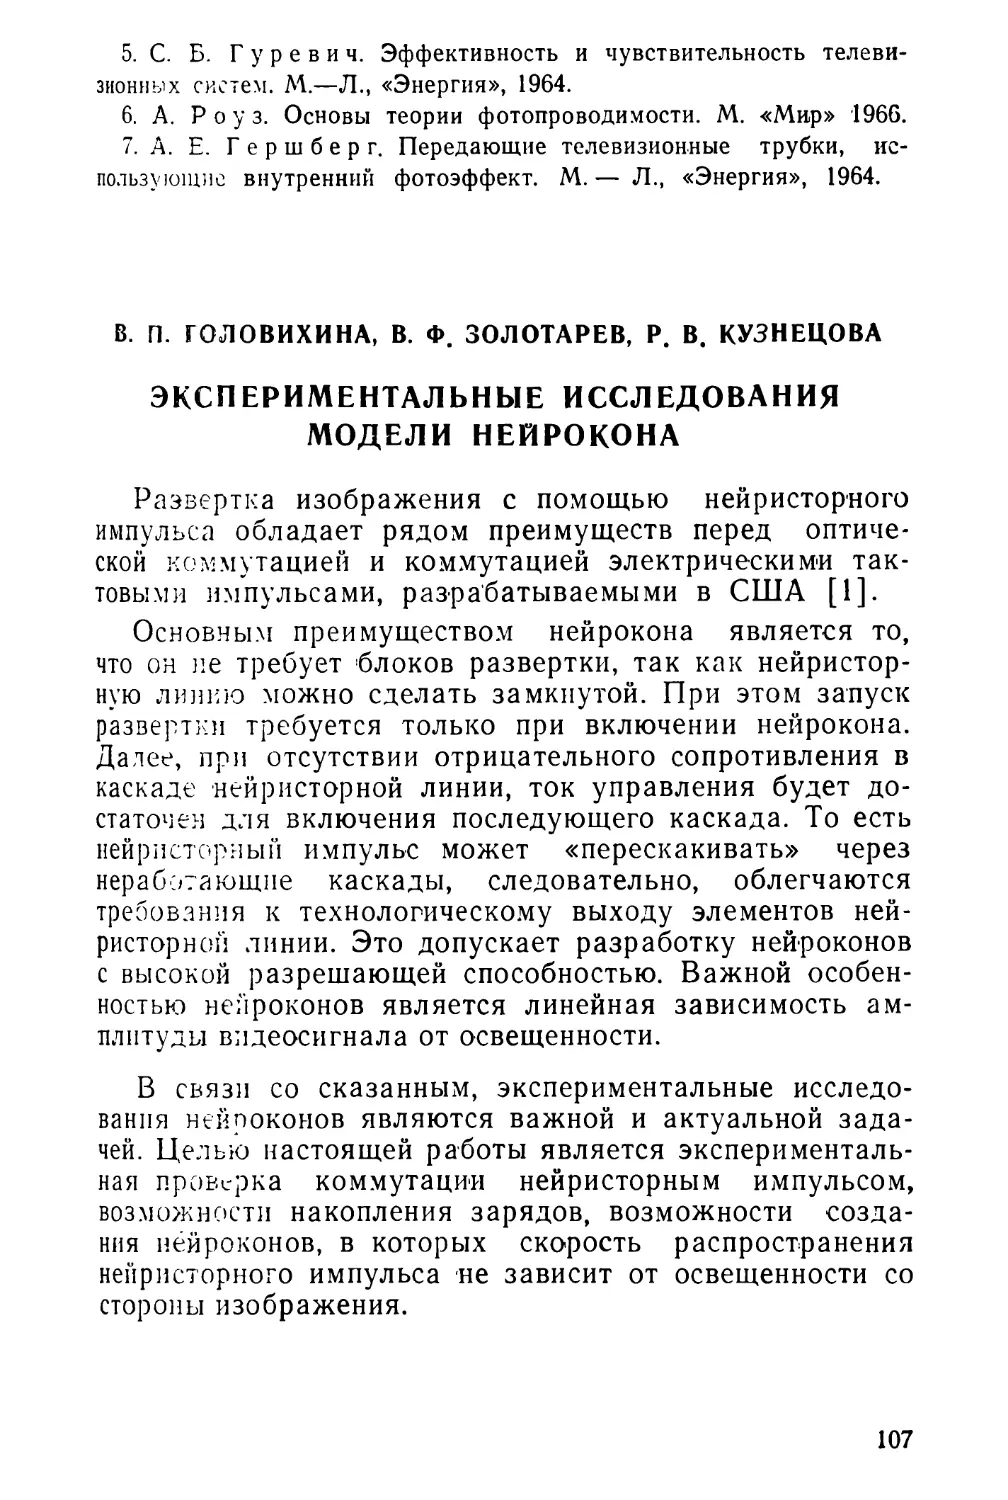 В. П. Головихина, В. Ф. Золотарев, Р. В. Кузнецова. Экспериментальные исследования модели нейрокона